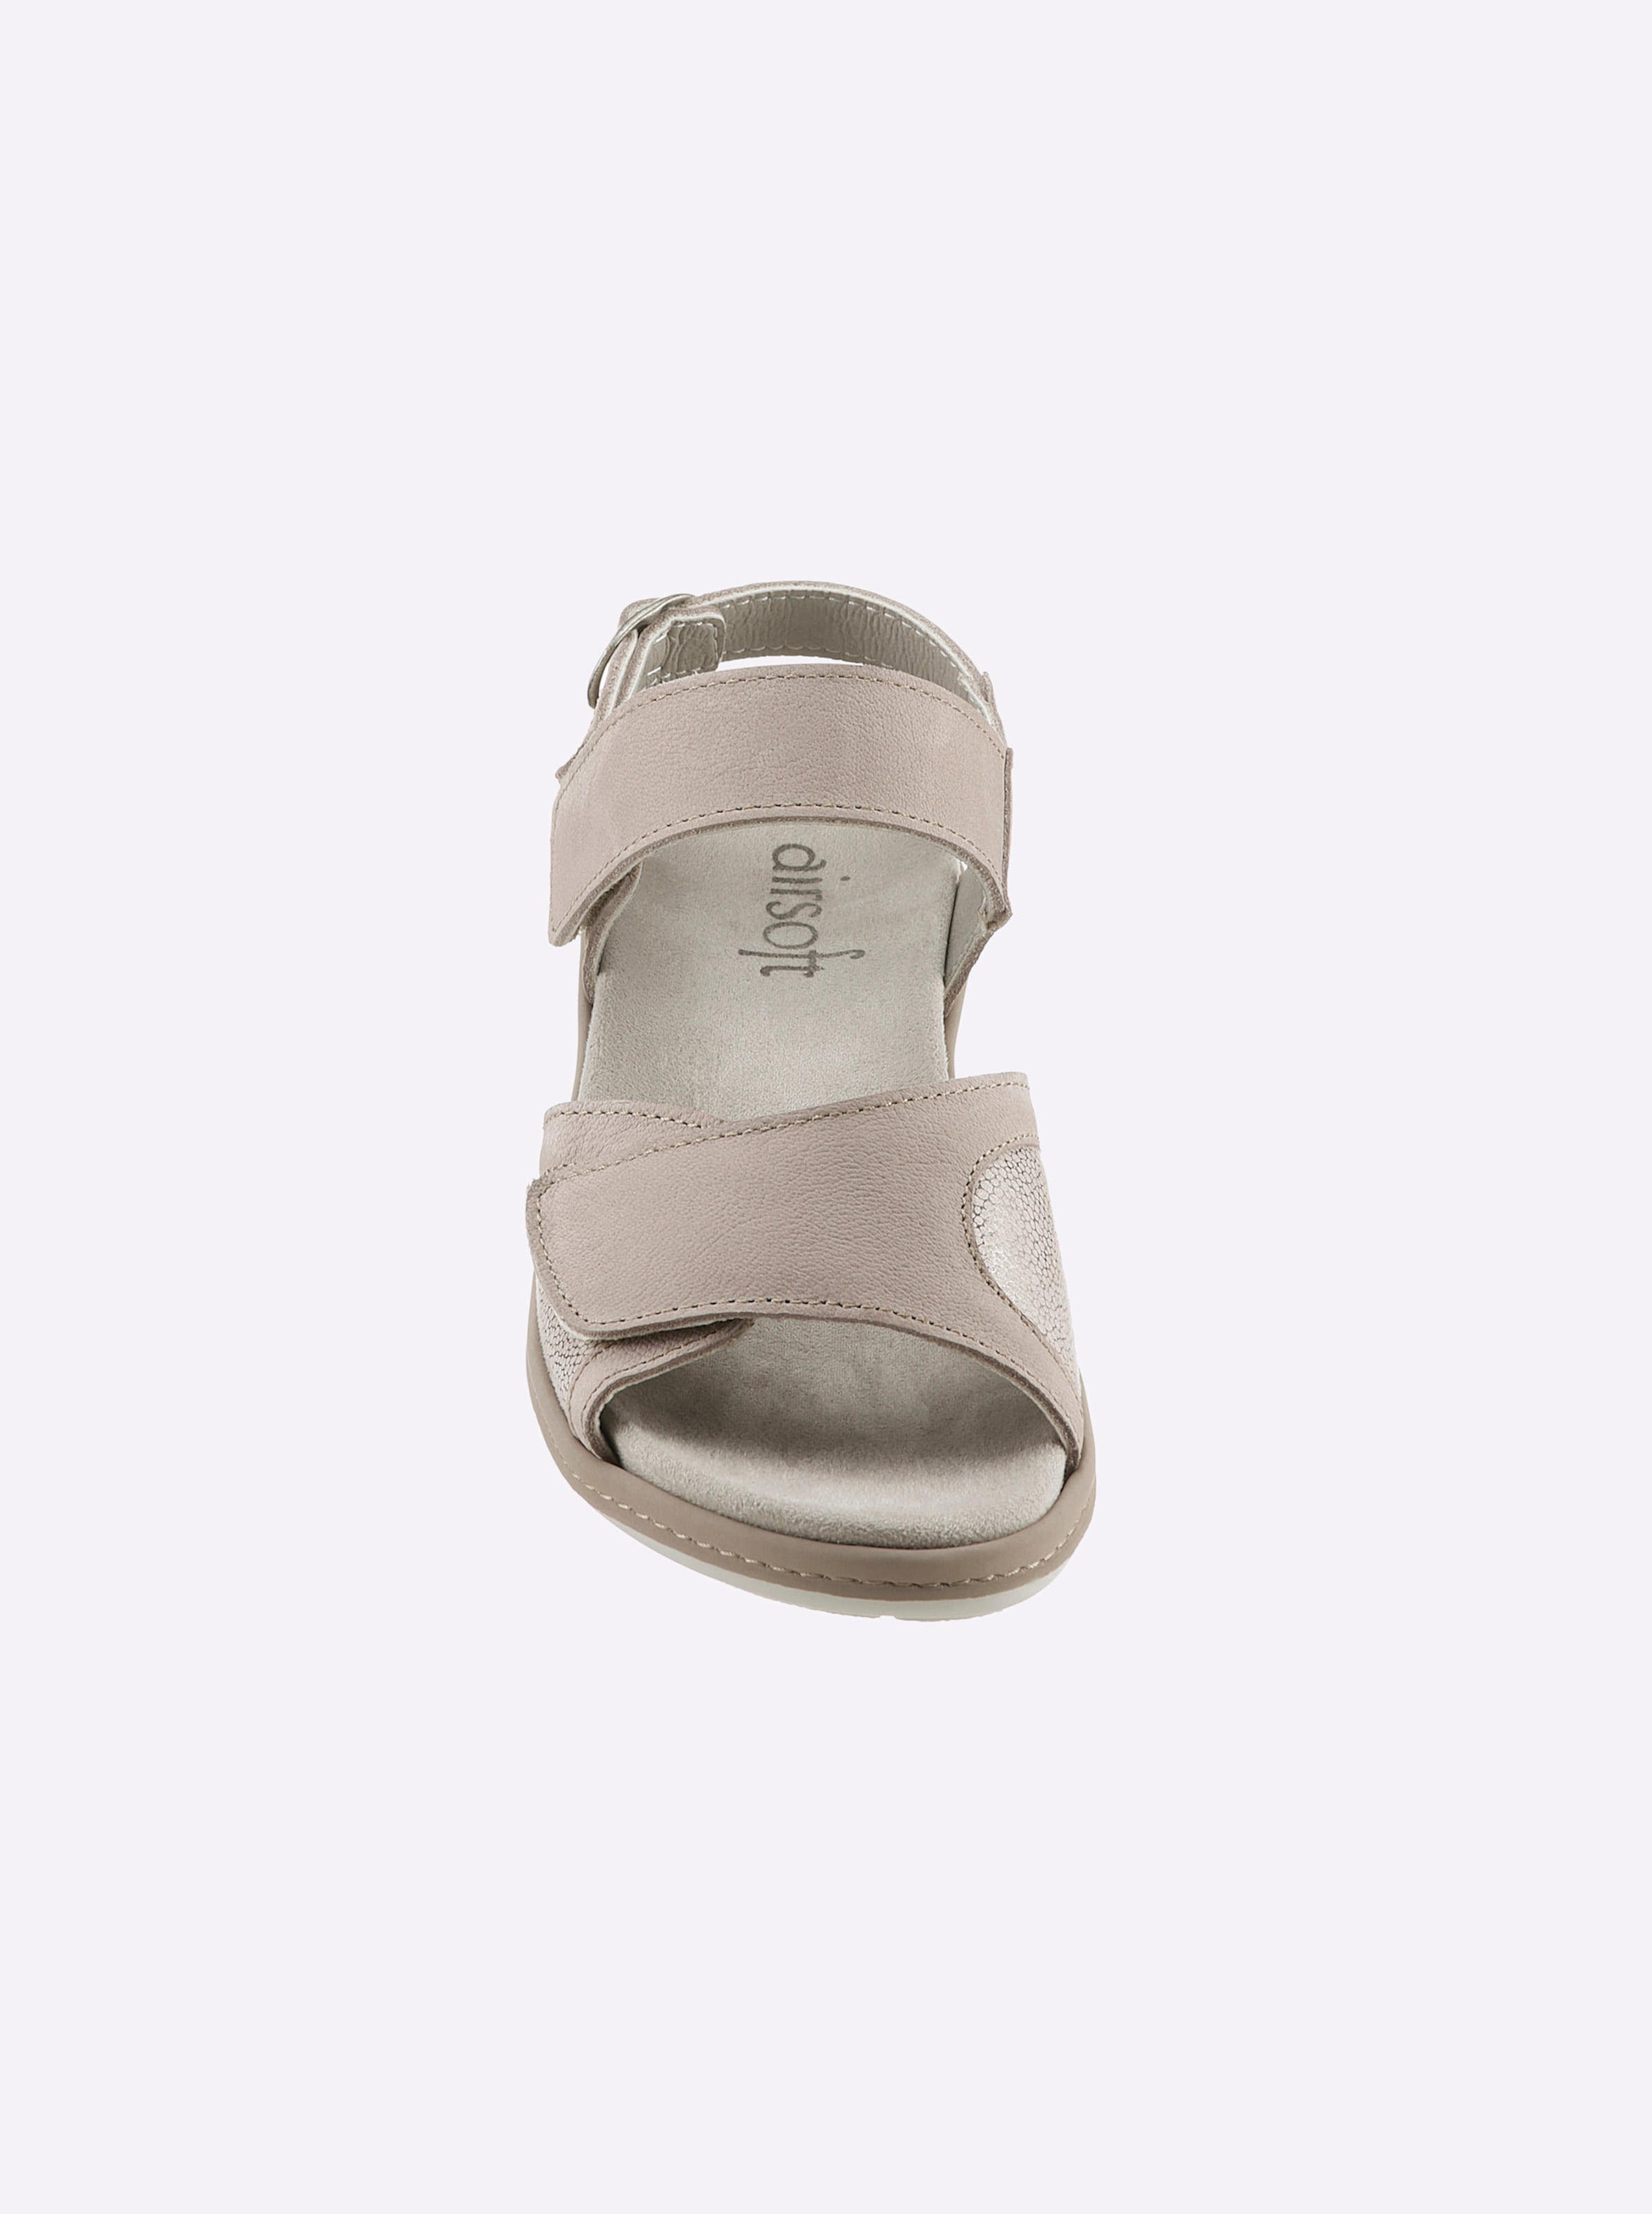 Airsoft Bereich günstig Kaufen-Sandalette in beige von airsoft comfort+. Sandalette in beige von airsoft comfort+ <![CDATA[Verwöhnen Sie Ihre Füße mit der Sandalette von airsoft comfort+ – sehr komfortabel im Vorderfußbereich dank speziellem, seitlichem Stretch-Einsatz. Federleic